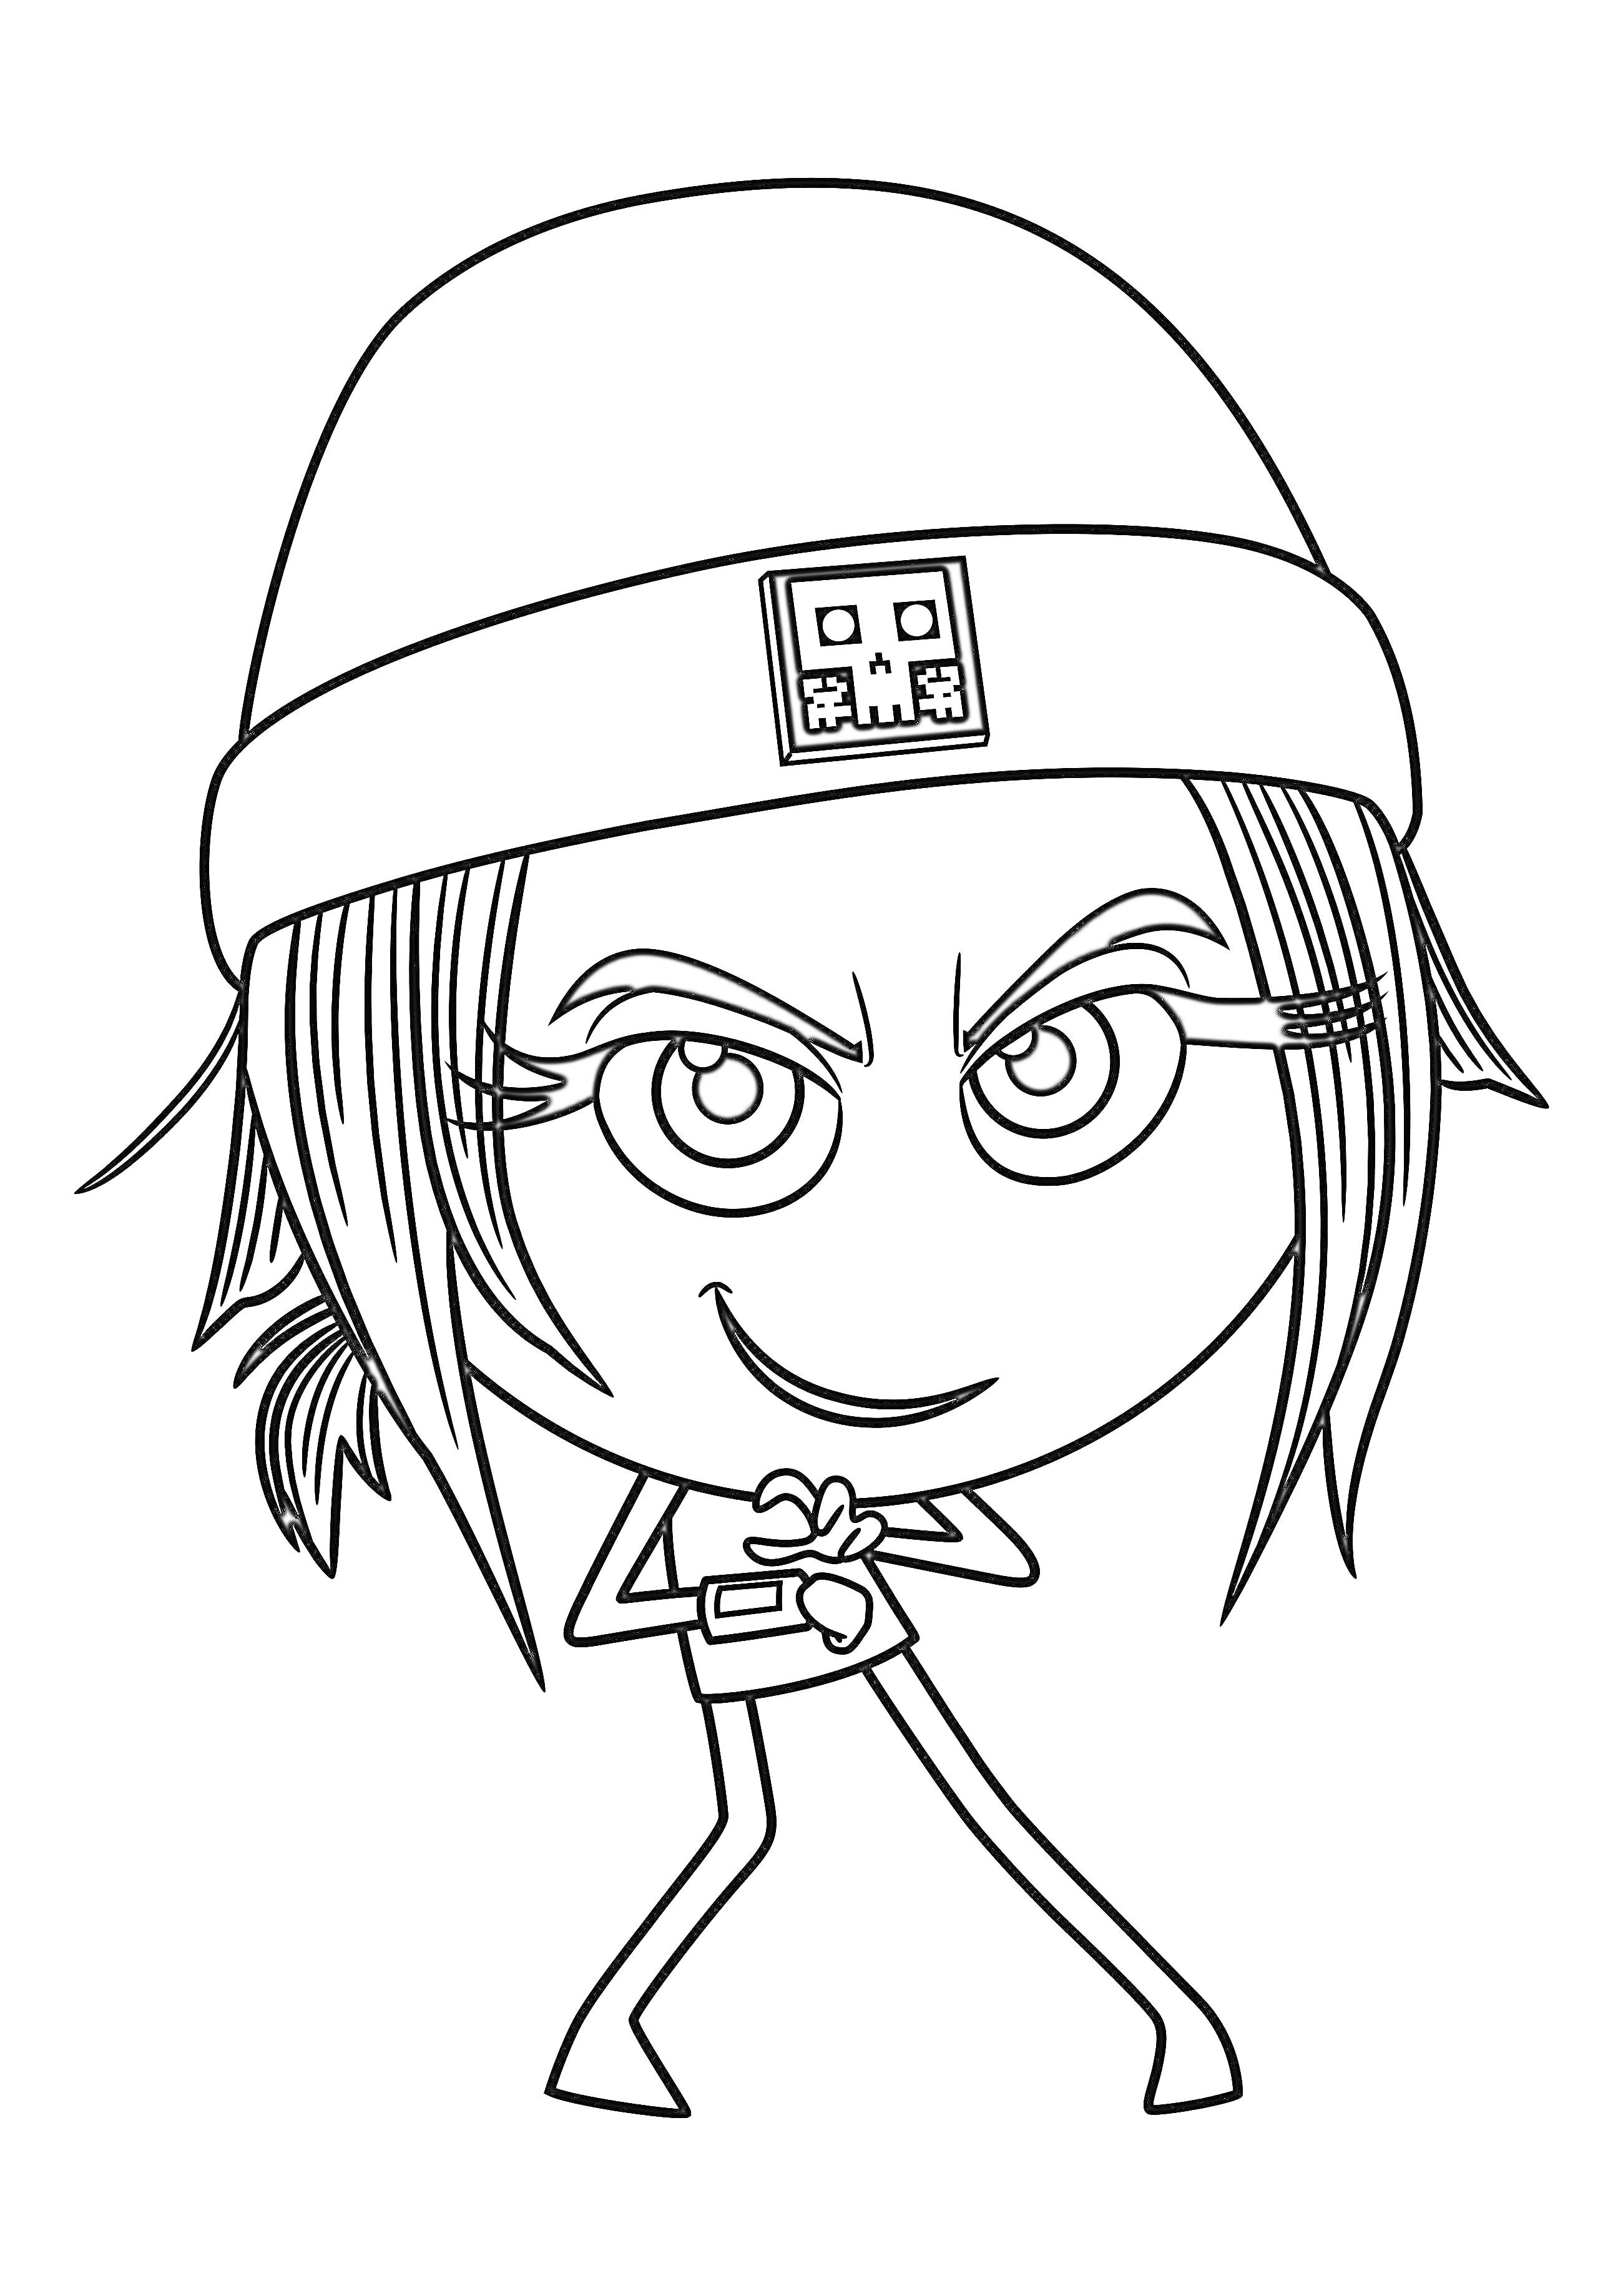 Эмодзи персонаж в шапке с наглой улыбкой, сложенными ладонями и длинными ресницами